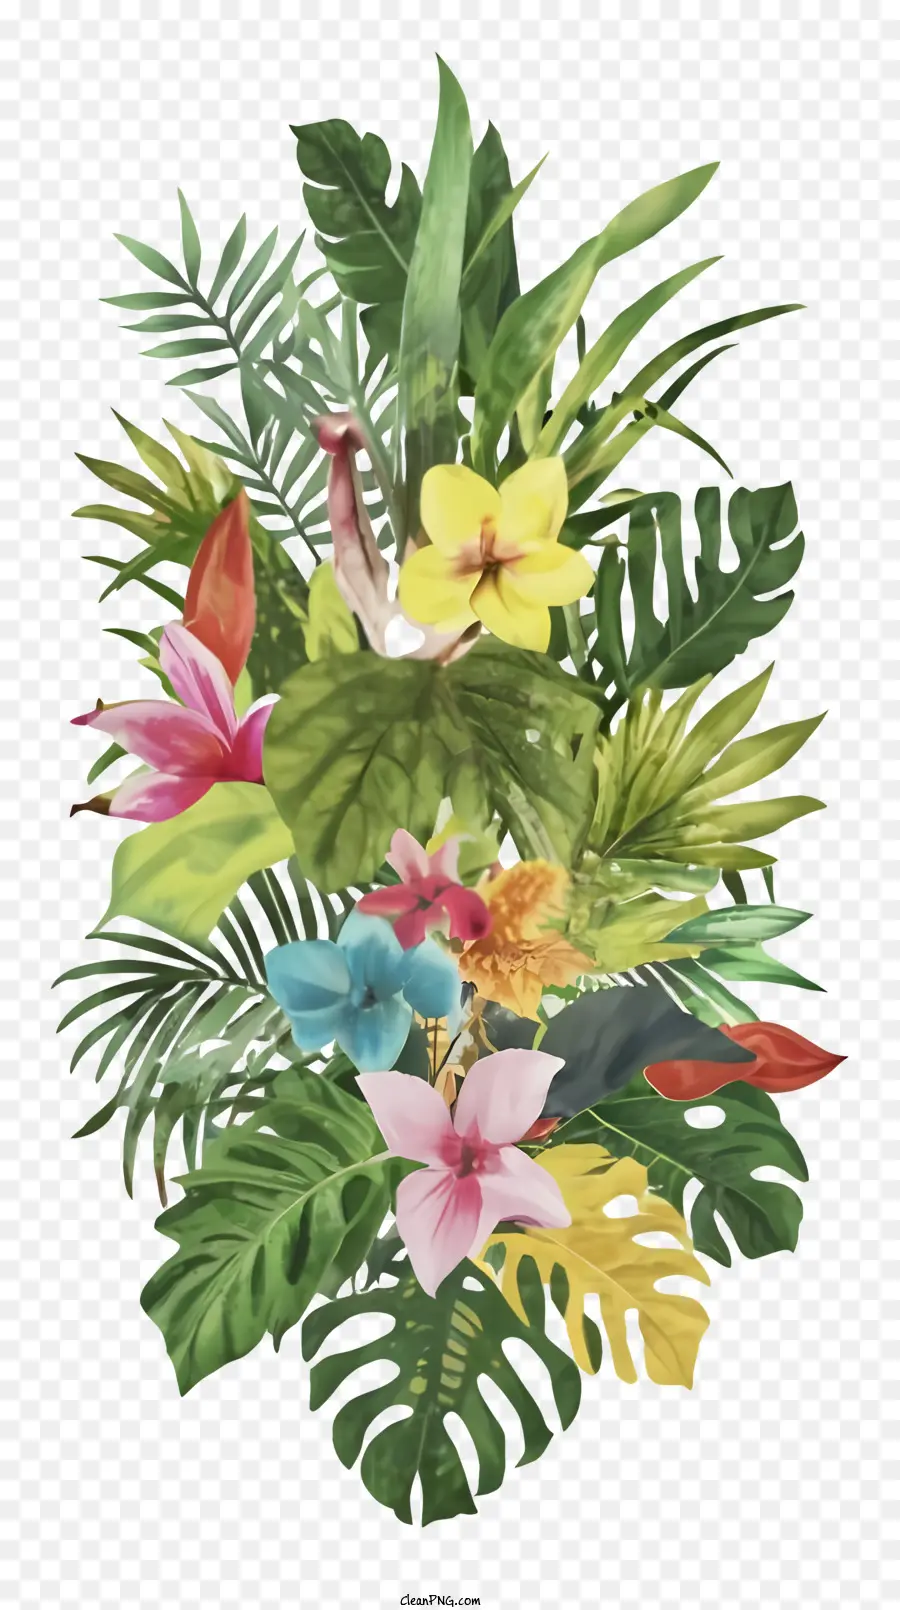 Hoa nhiệt đới Heliconia Bird of Paradise Hoa Bình hoặc giỏ - Sự sắp xếp lớn của hoa nhiệt đới trên nền đen